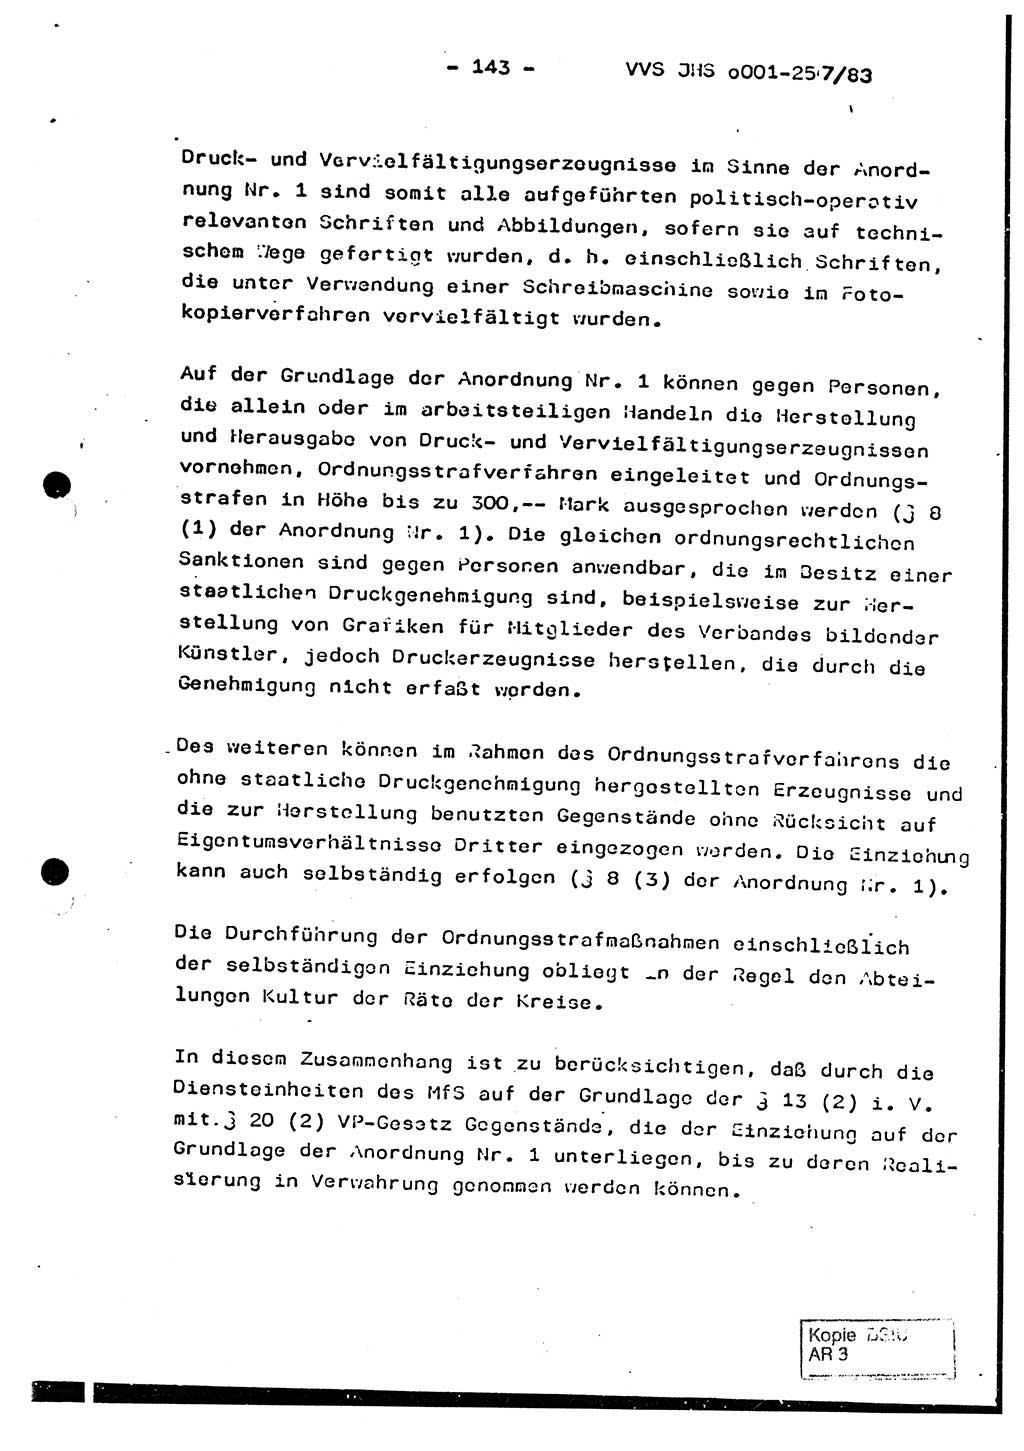 Dissertation, Oberst Helmut Lubas (BV Mdg.), Oberstleutnant Manfred Eschberger (HA IX), Oberleutnant Hans-Jürgen Ludwig (JHS), Ministerium für Staatssicherheit (MfS) [Deutsche Demokratische Republik (DDR)], Juristische Hochschule (JHS), Vertrauliche Verschlußsache (VVS) o001-257/83, Potsdam 1983, Seite 143 (Diss. MfS DDR JHS VVS o001-257/83 1983, S. 143)